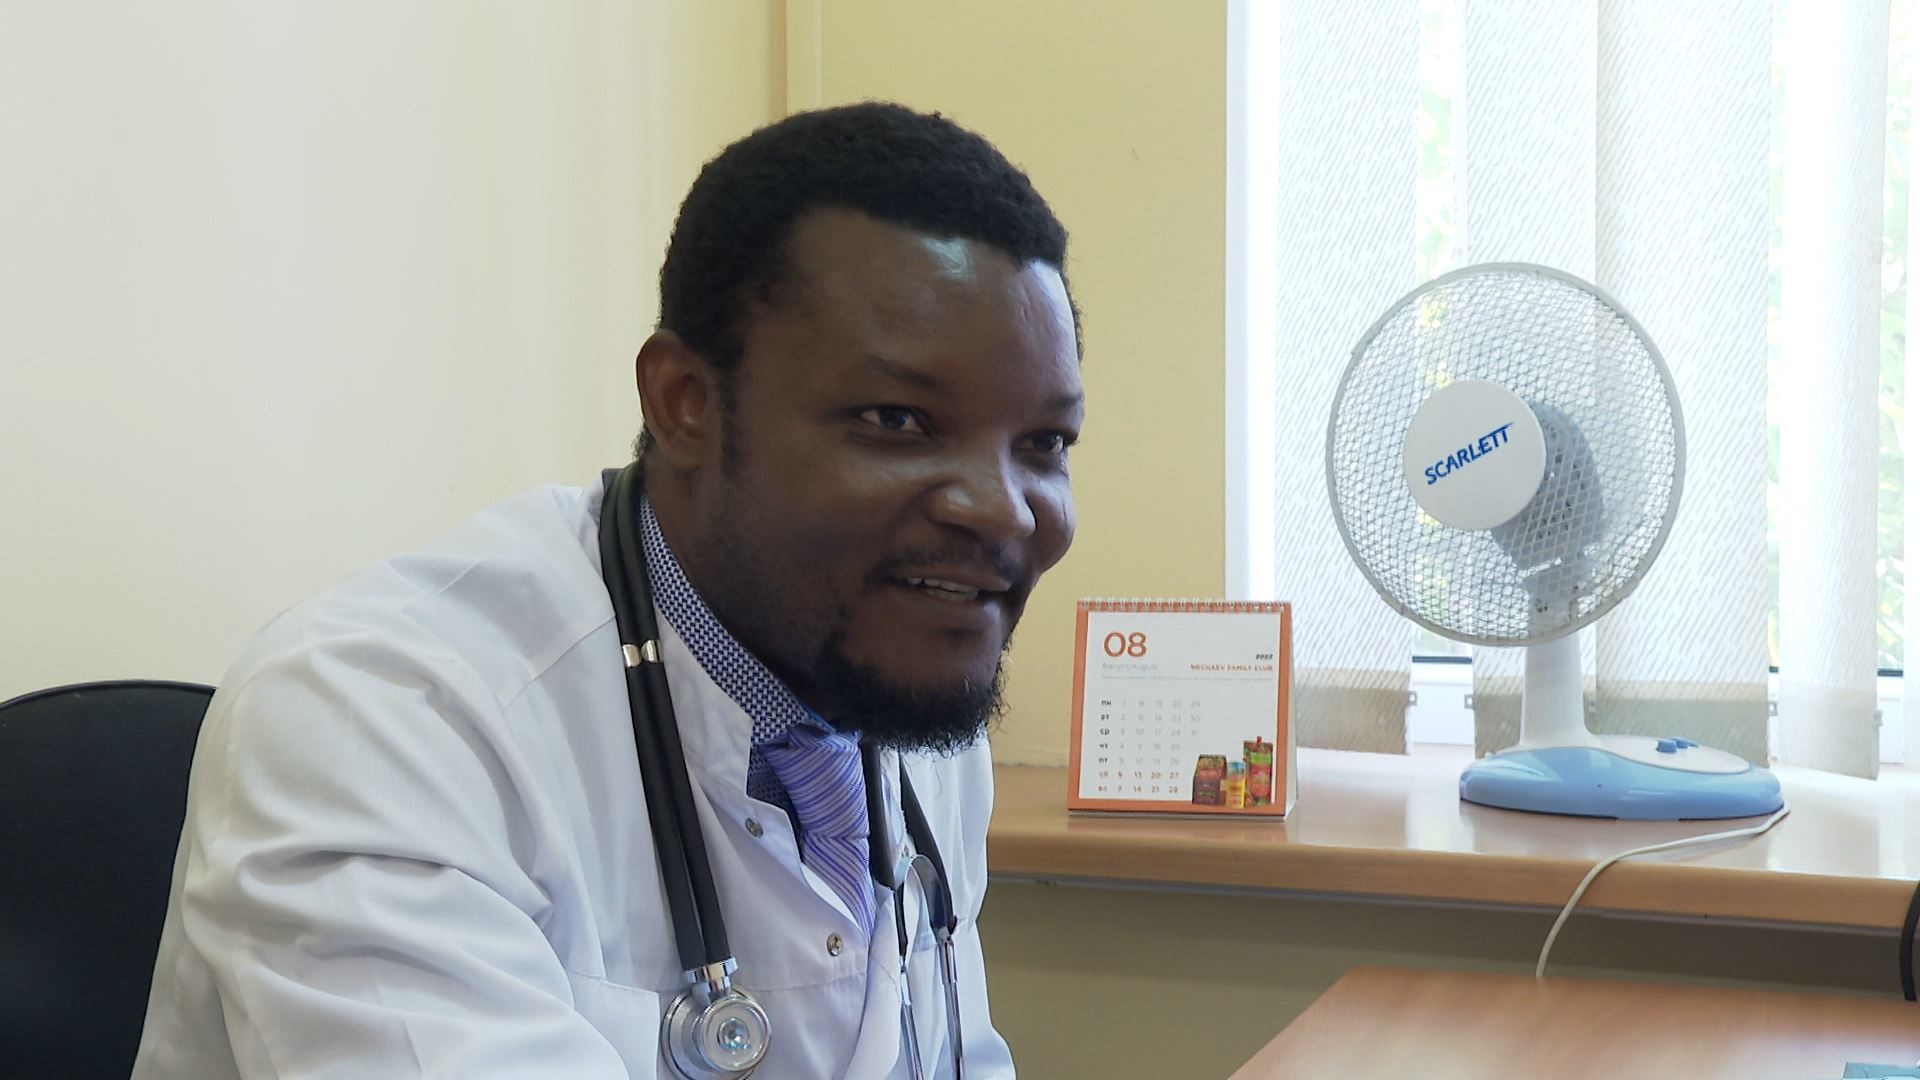 В Калининградской области появился новый терапевт родом из Ганы